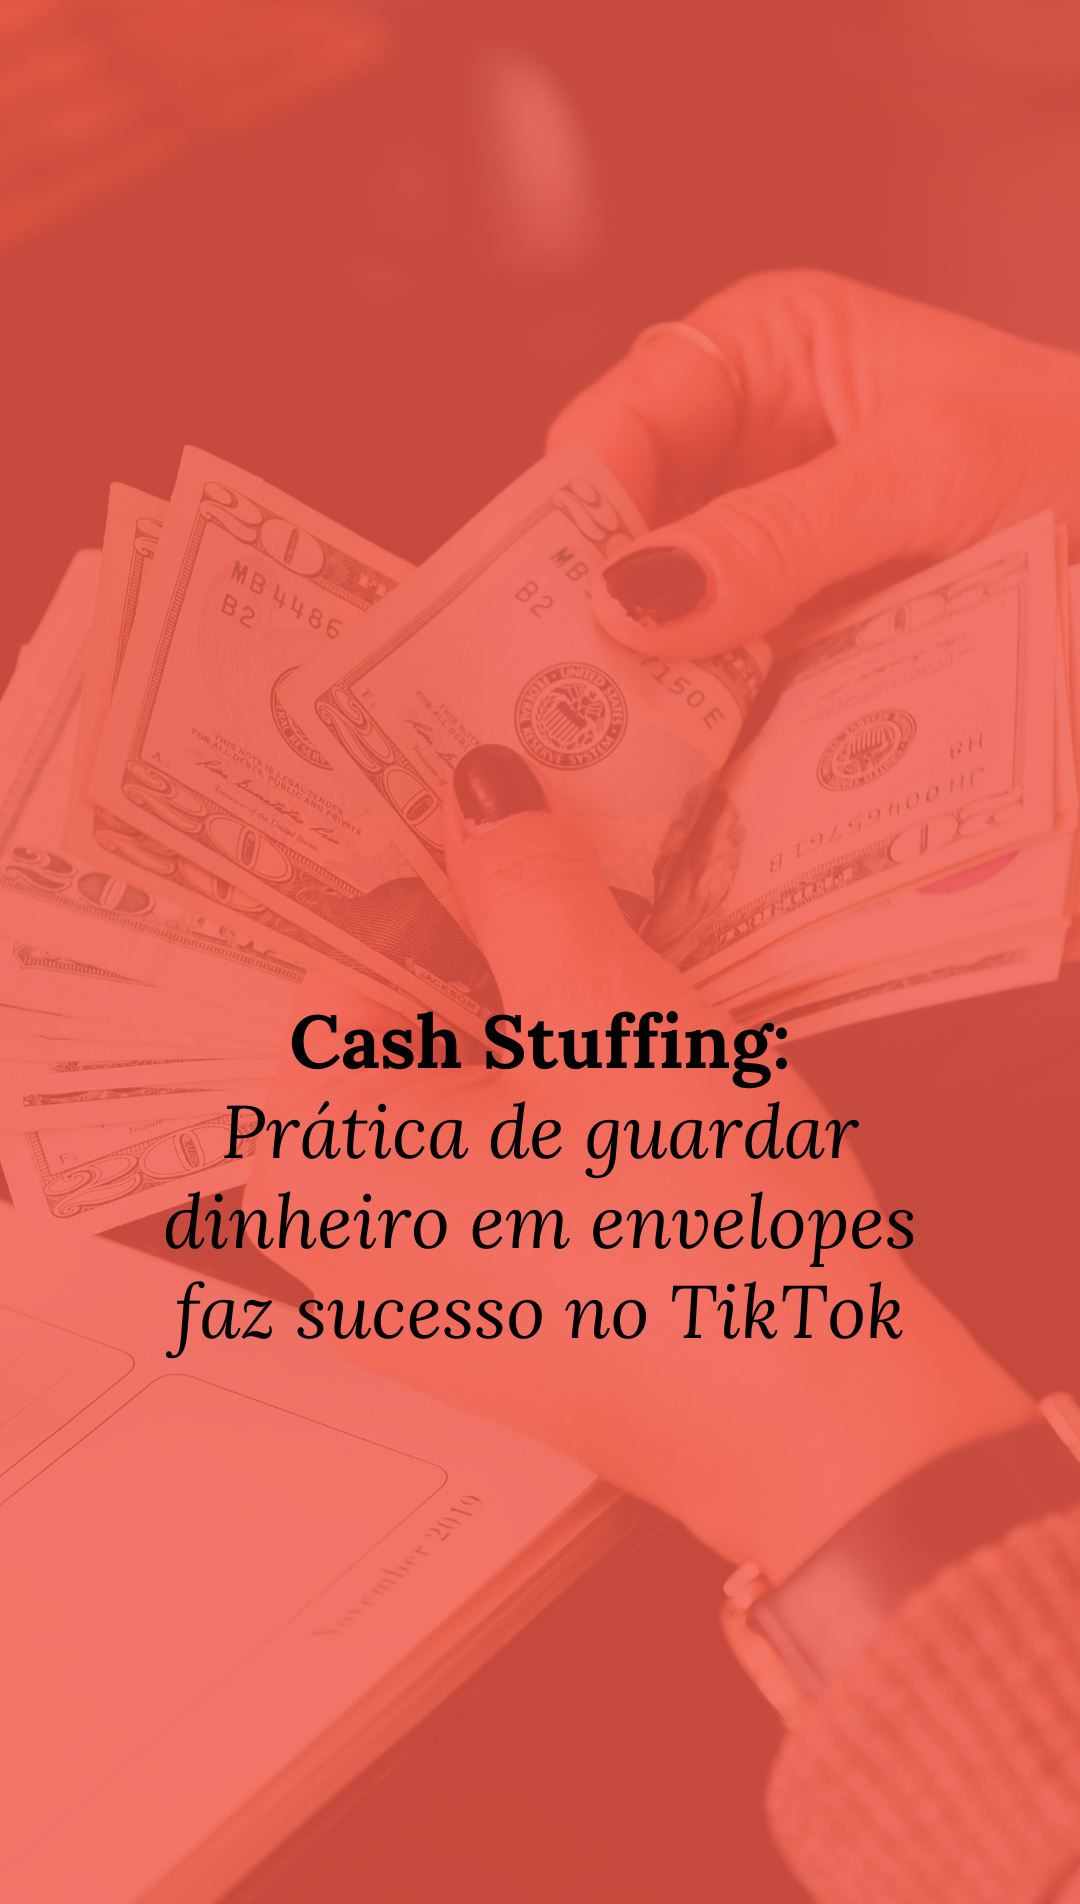 Cash Stuffing: prática de guardar dinheiro em envelopes faz sucesso no TikTok